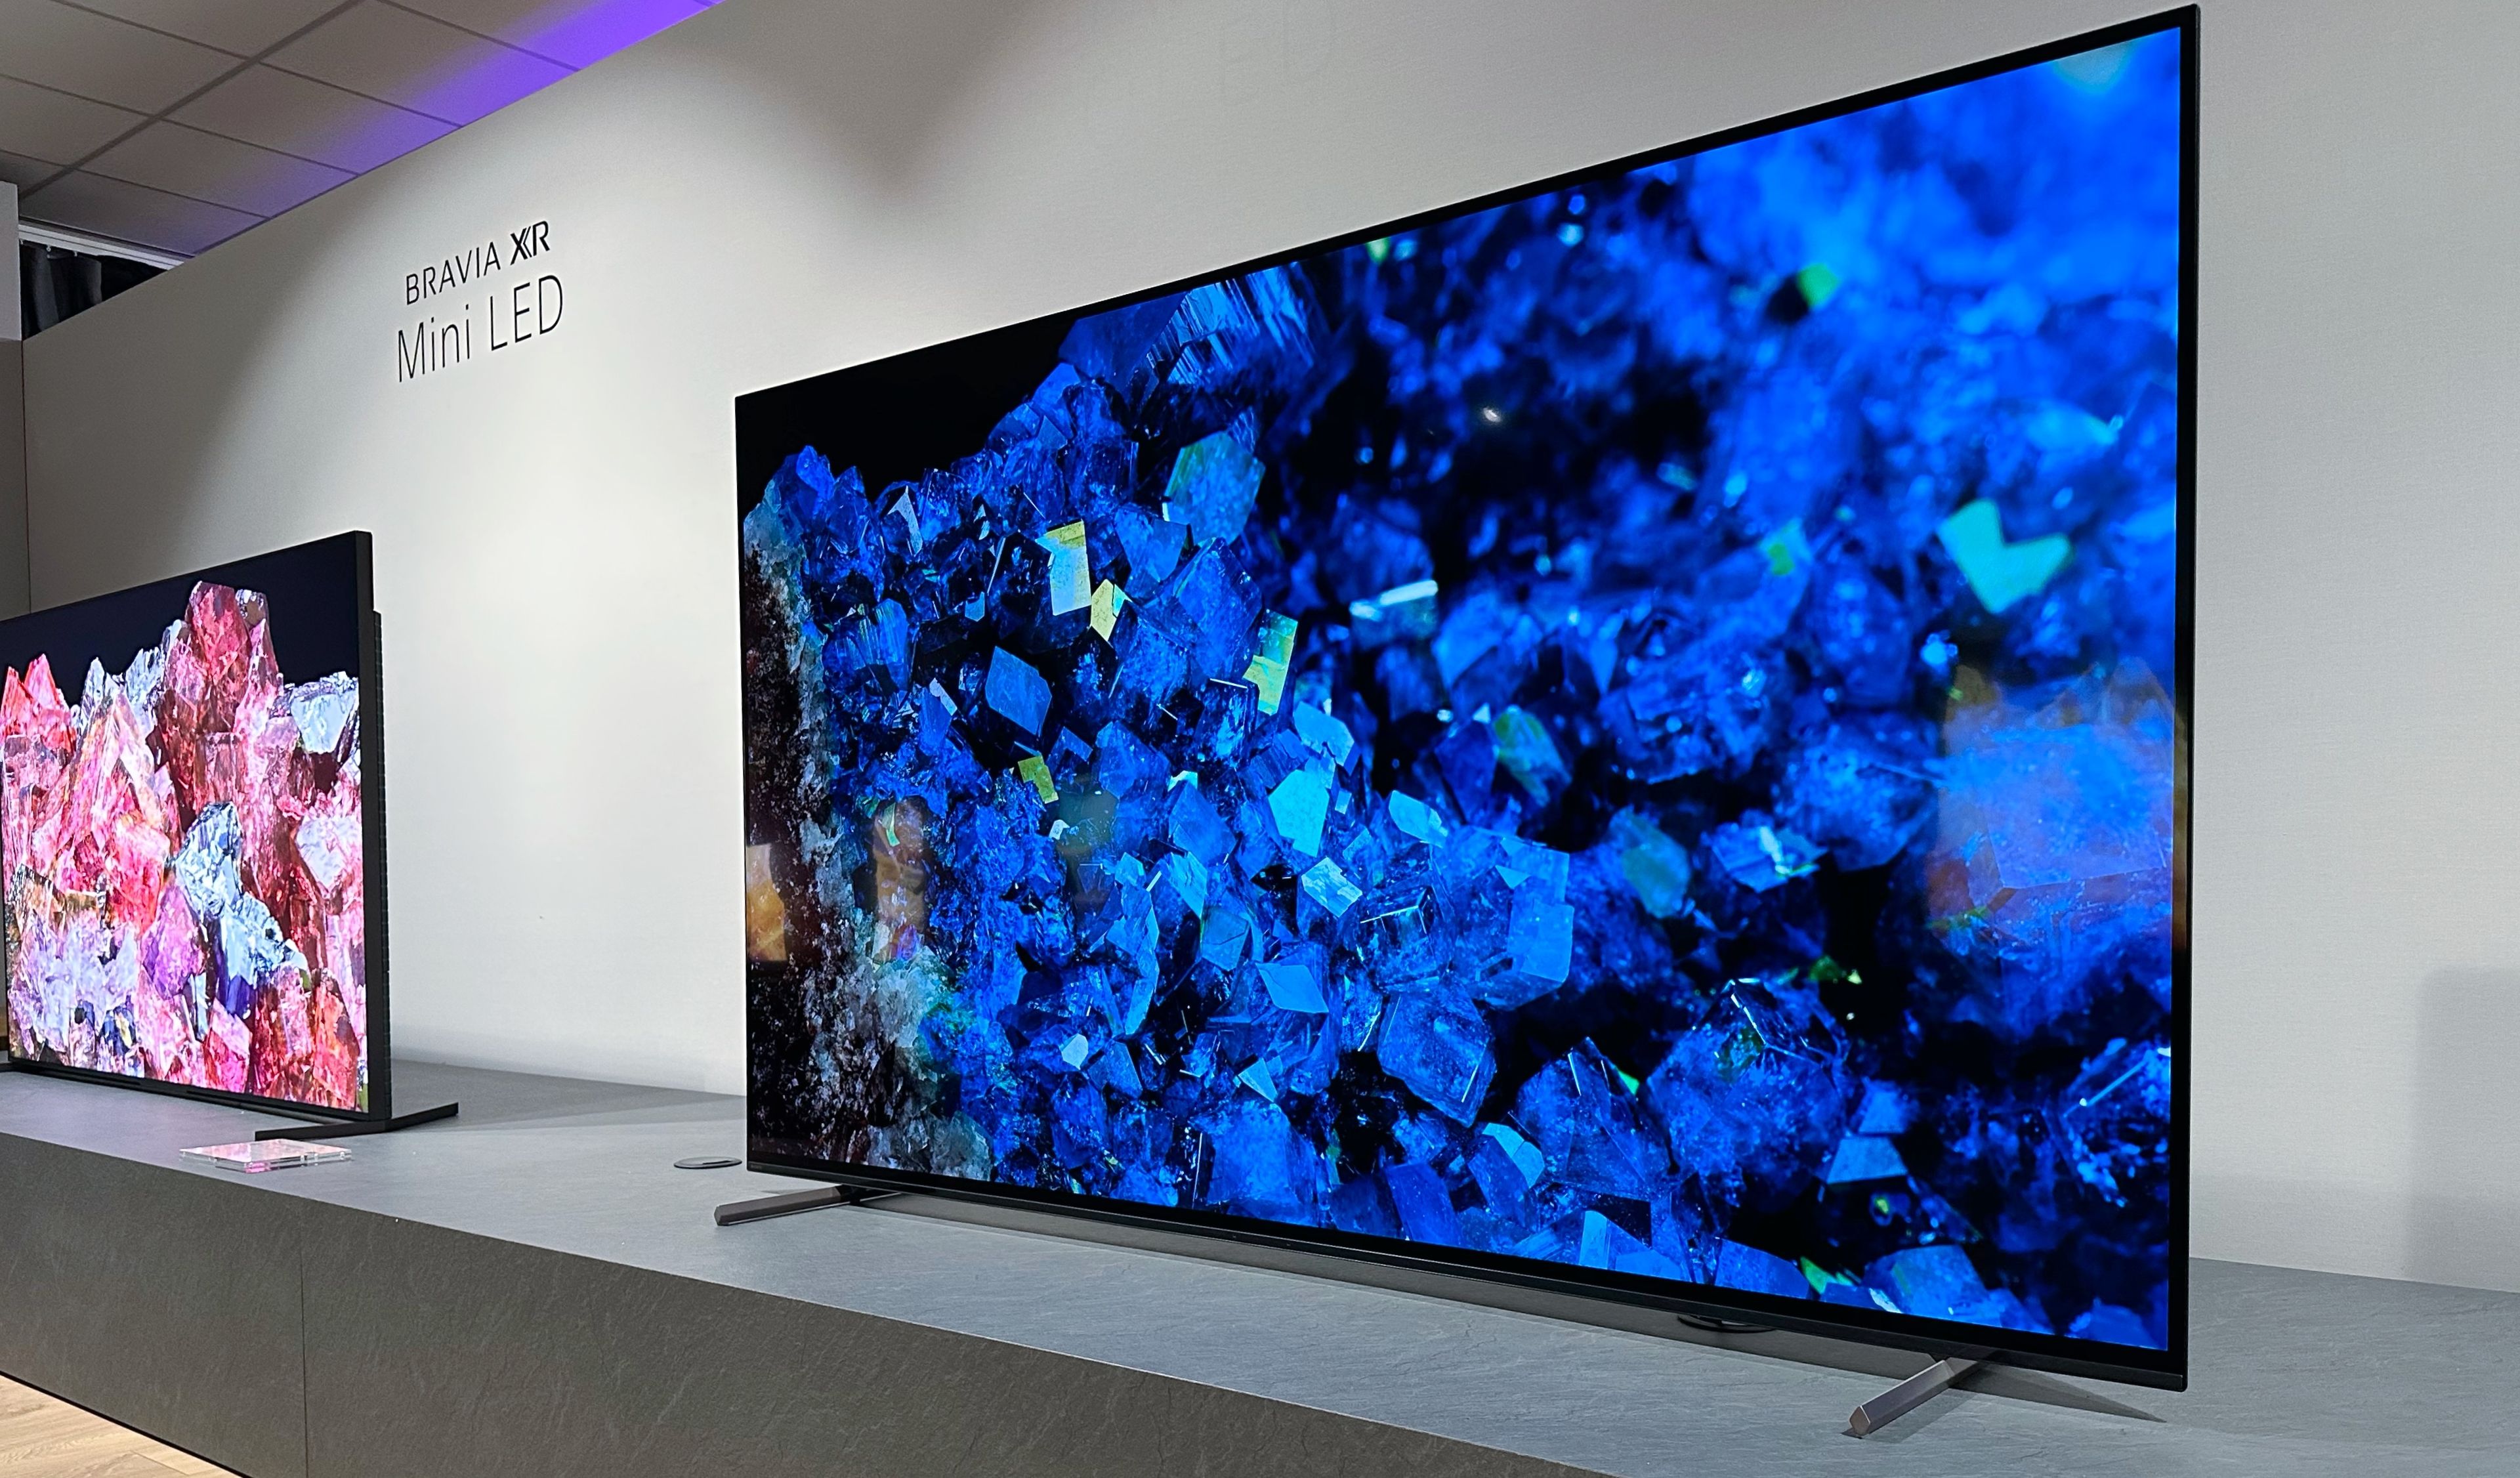 Nueva gama de televisores Sony 2023